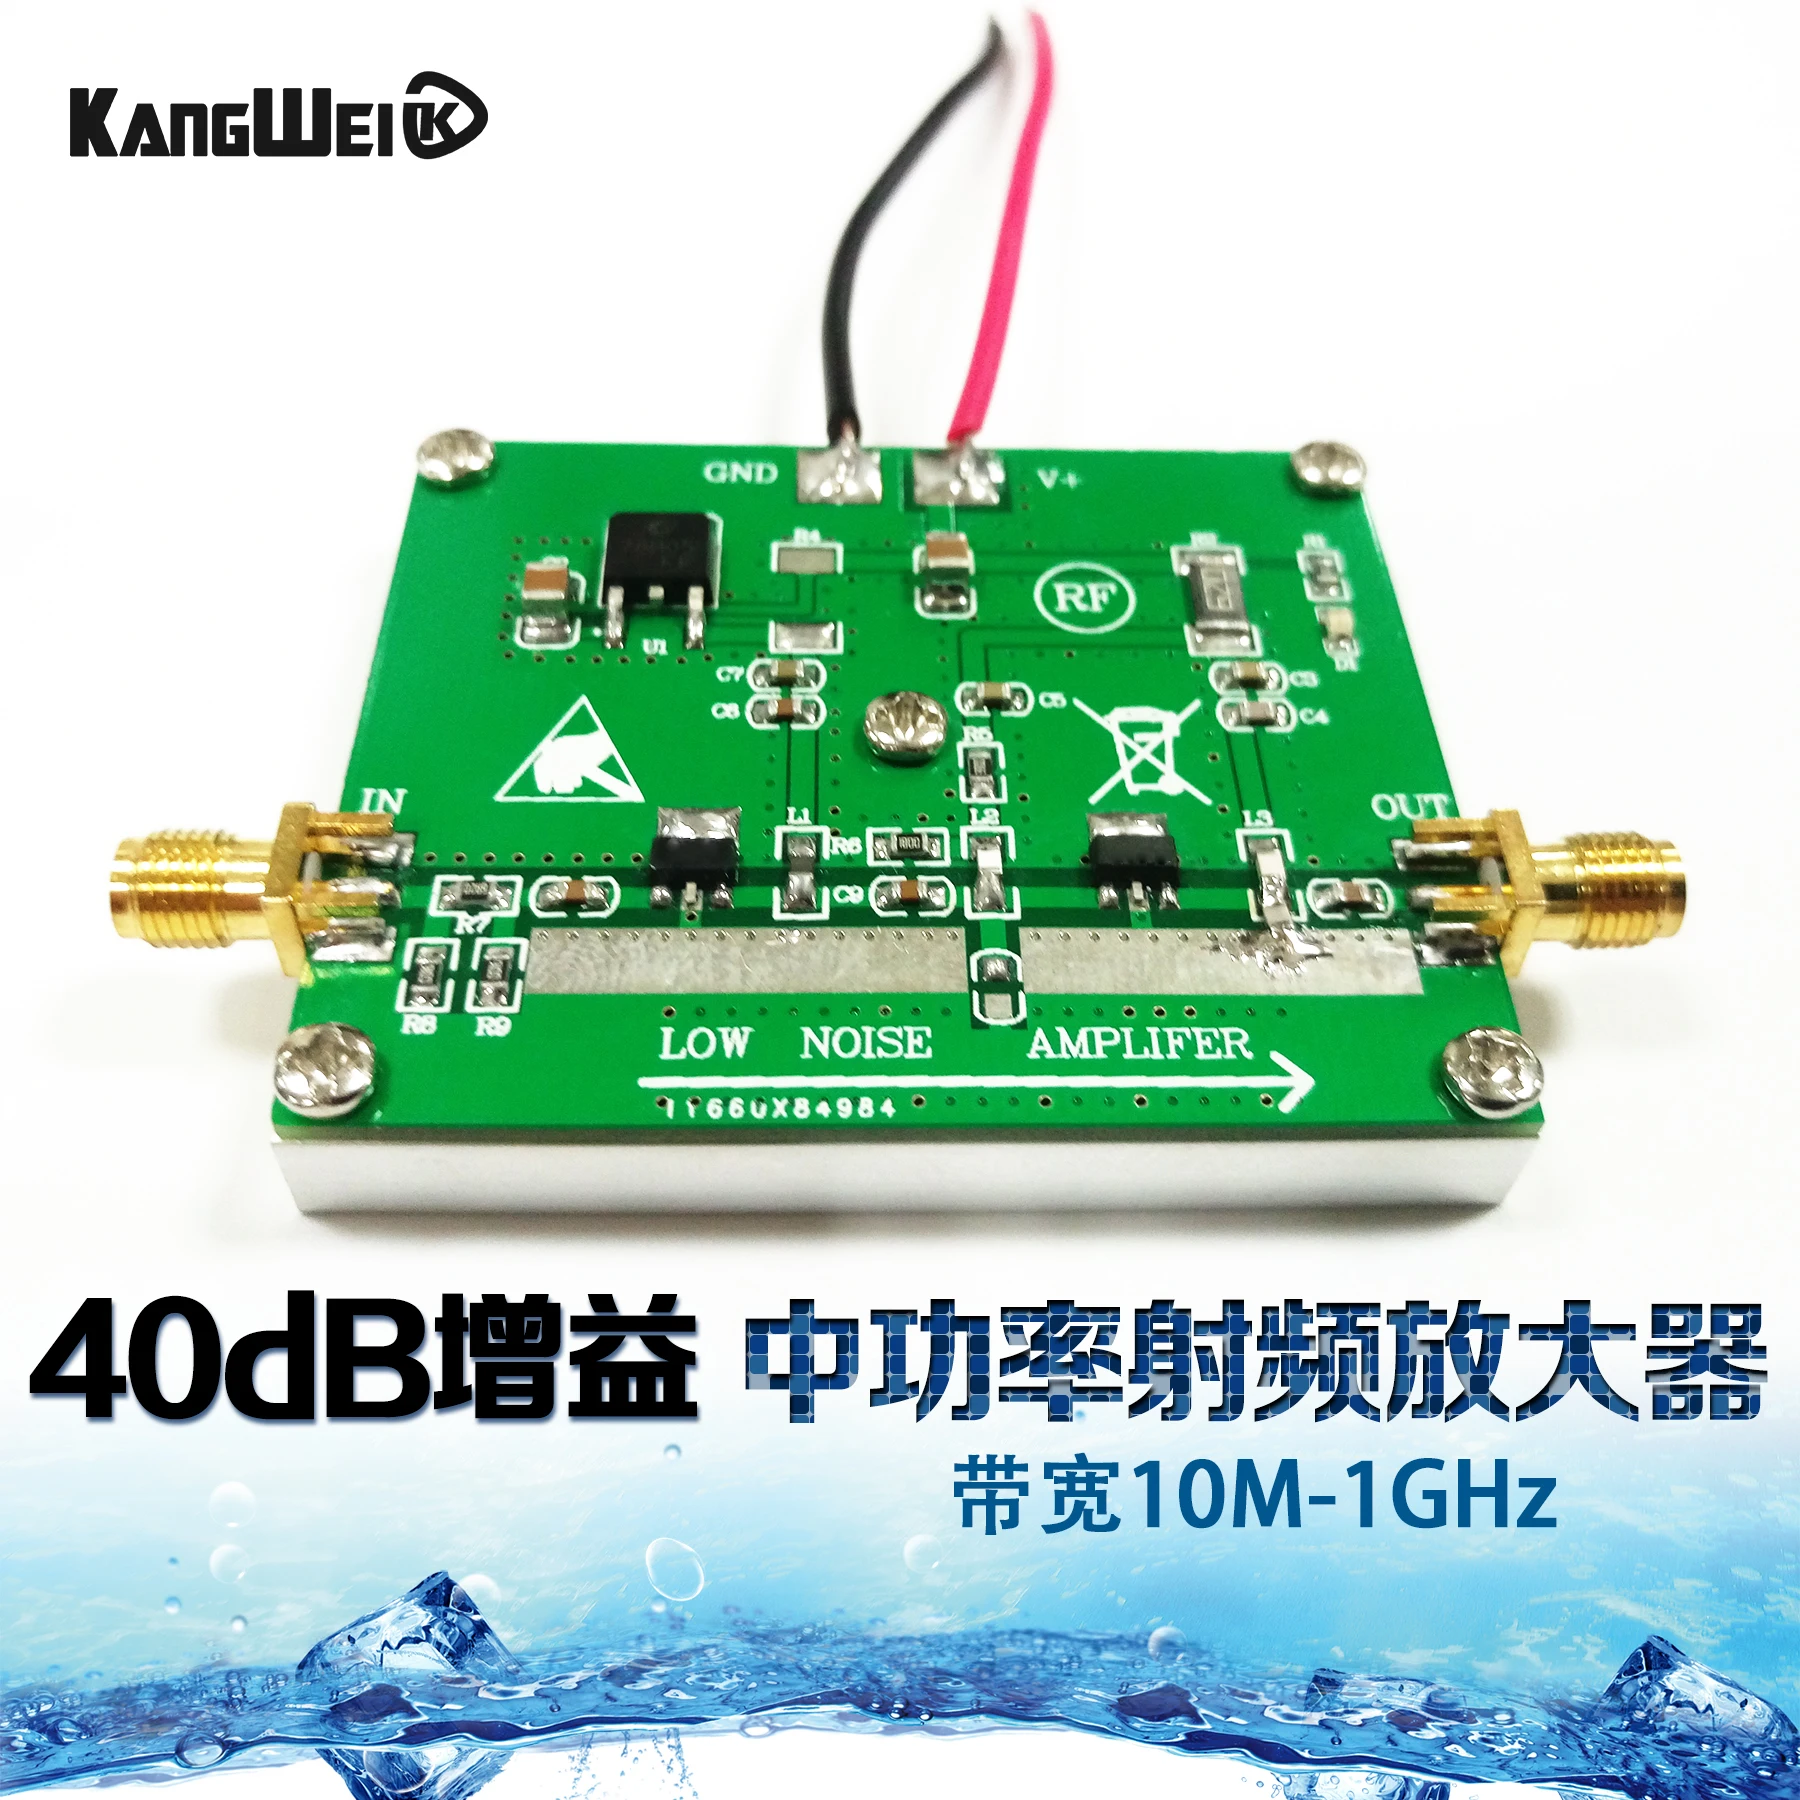 

Medium Power RF Amplifier 10m-1ghz 40dB Gain Power 1W Radio Amplification